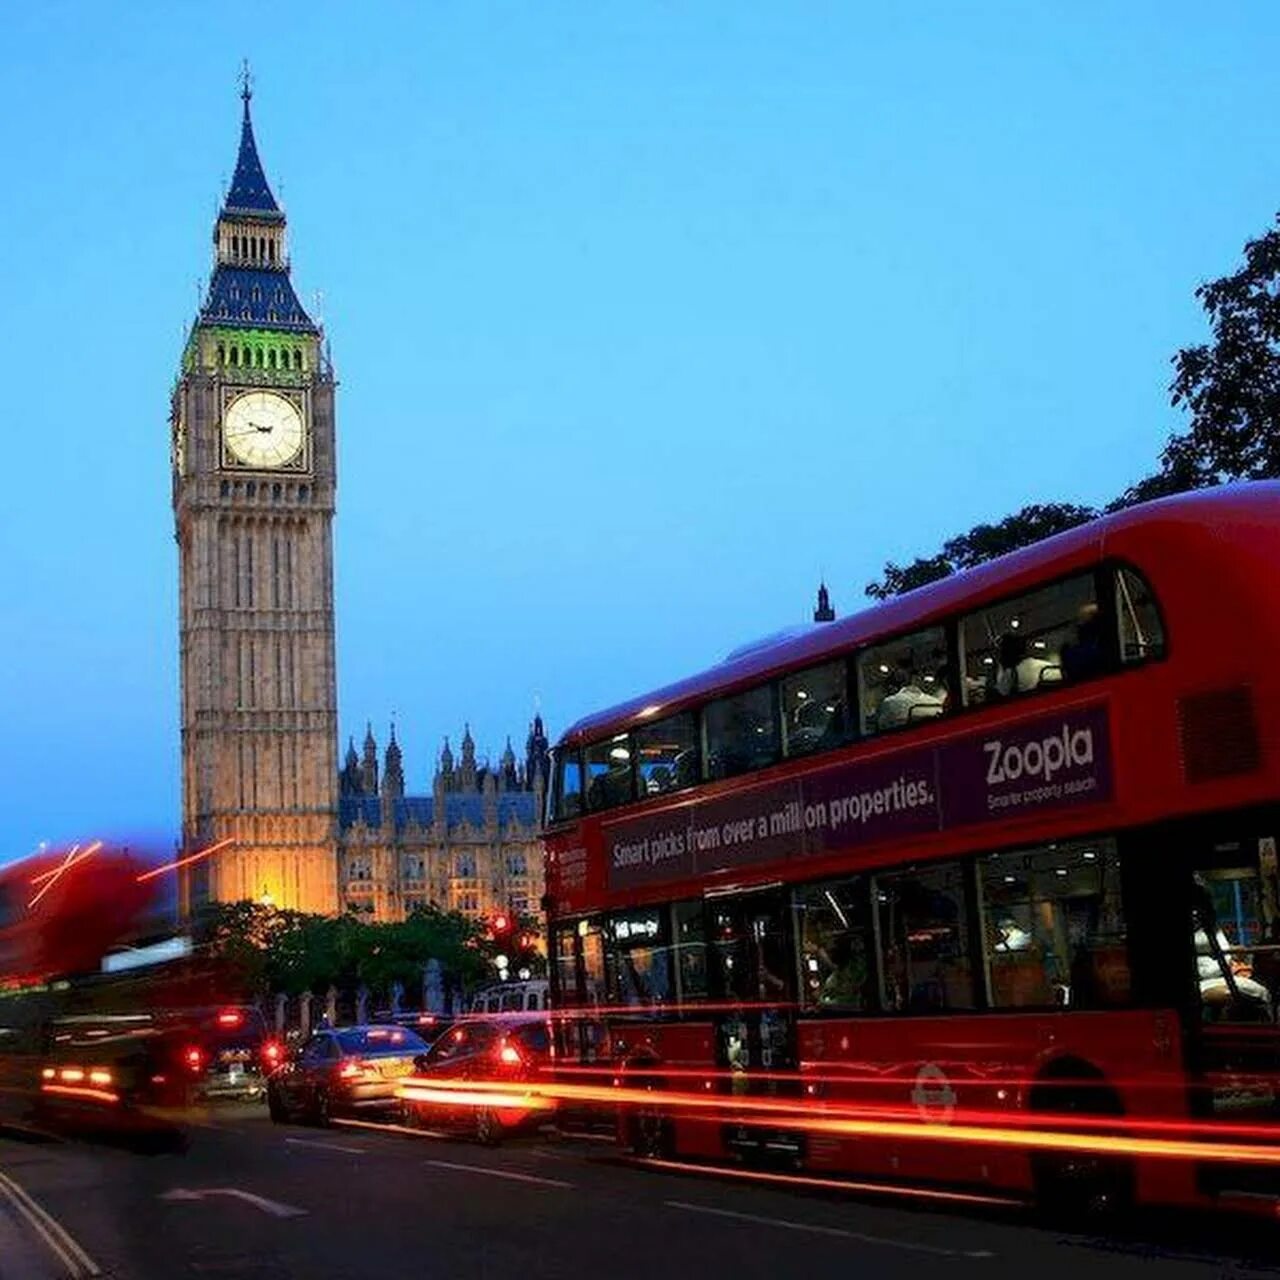 Сторона лондона. «Лондон» (London), 2005. Обзорная экскурсия по Лондону. Обзорная автобусная экскурсия по Лондону. Лондон экскурсия по городу.